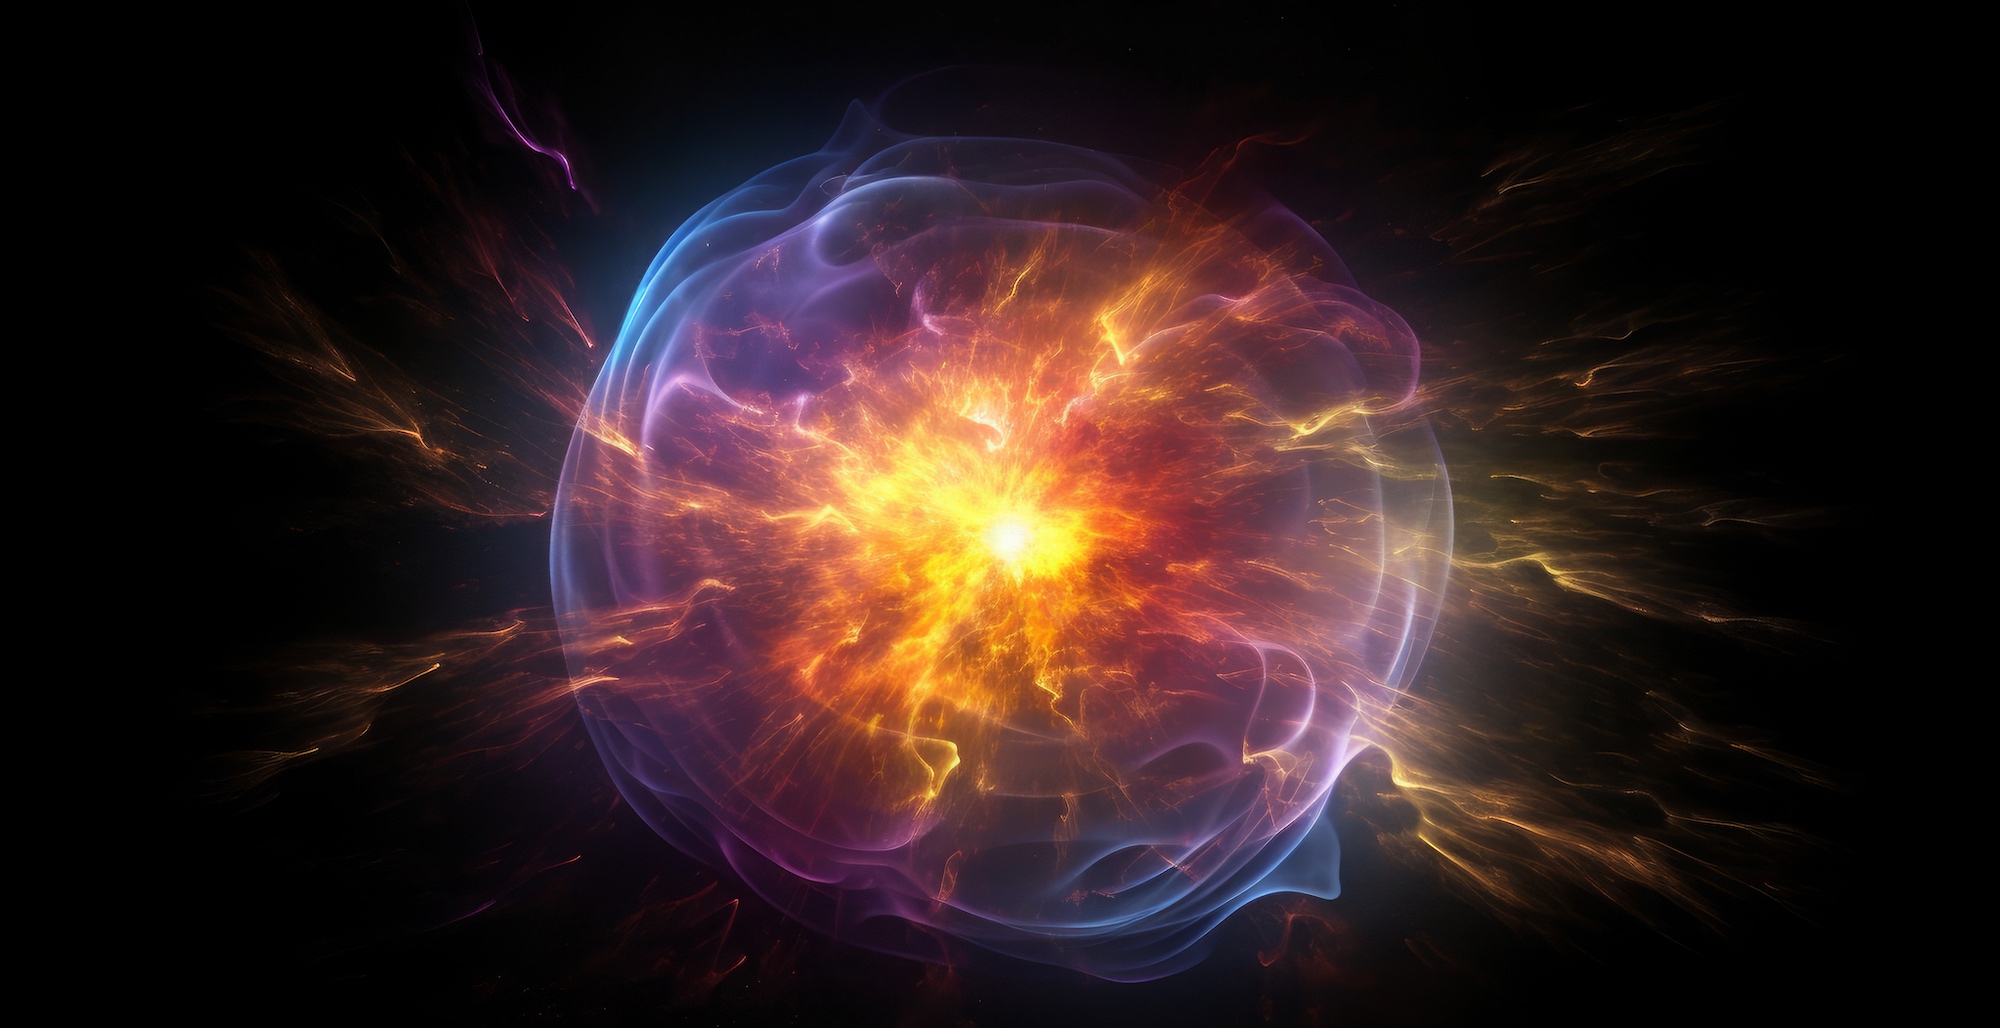 Illustration de l'explosion d'une étoile à neutrons. © TheGoldTiger, Adobe Stock